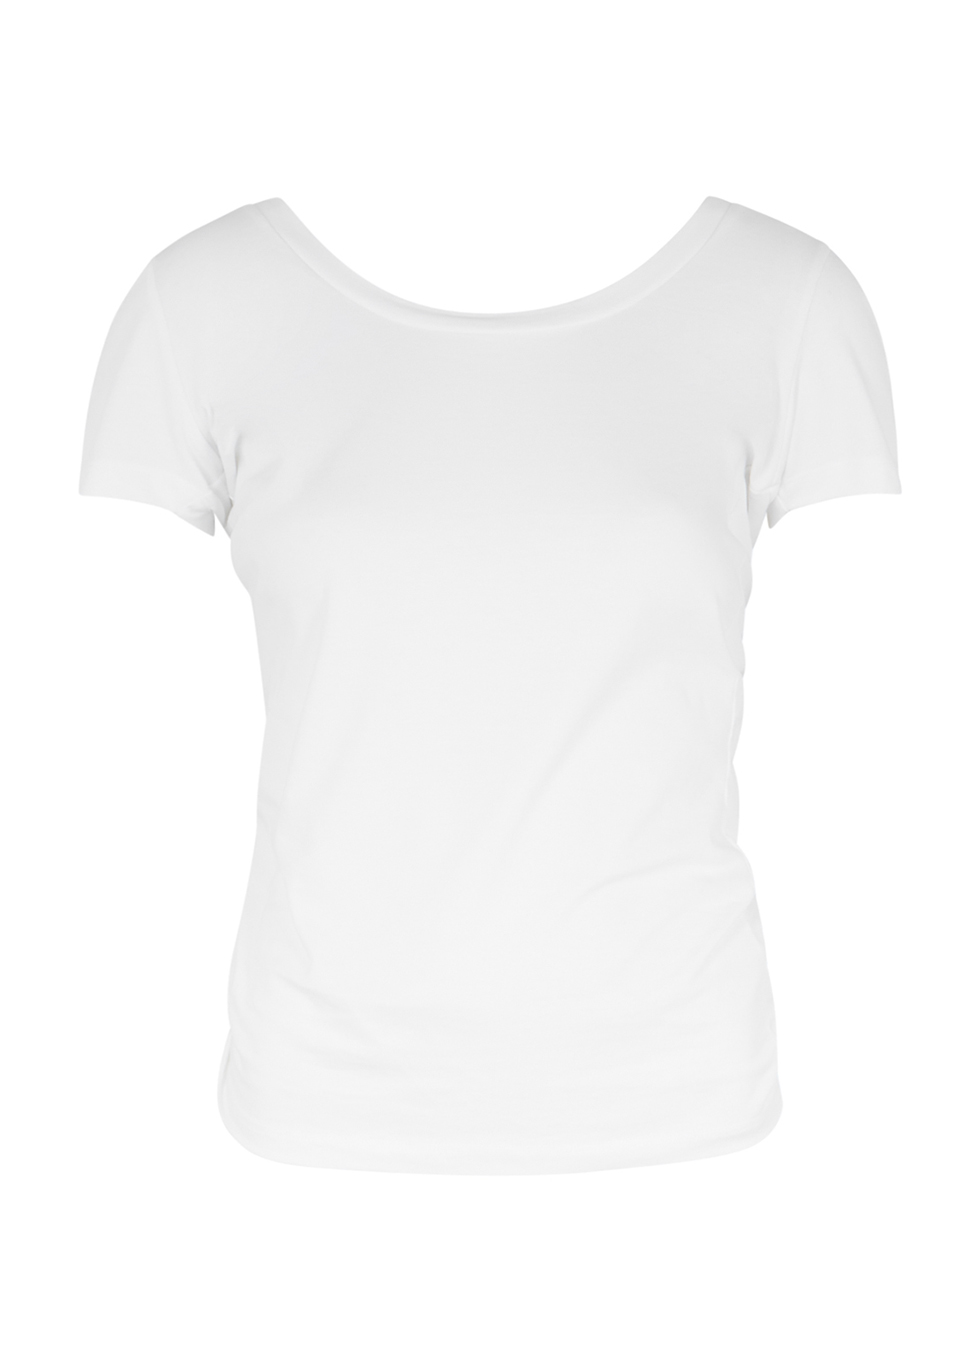 Le T-shirt Sprezze white cotton top